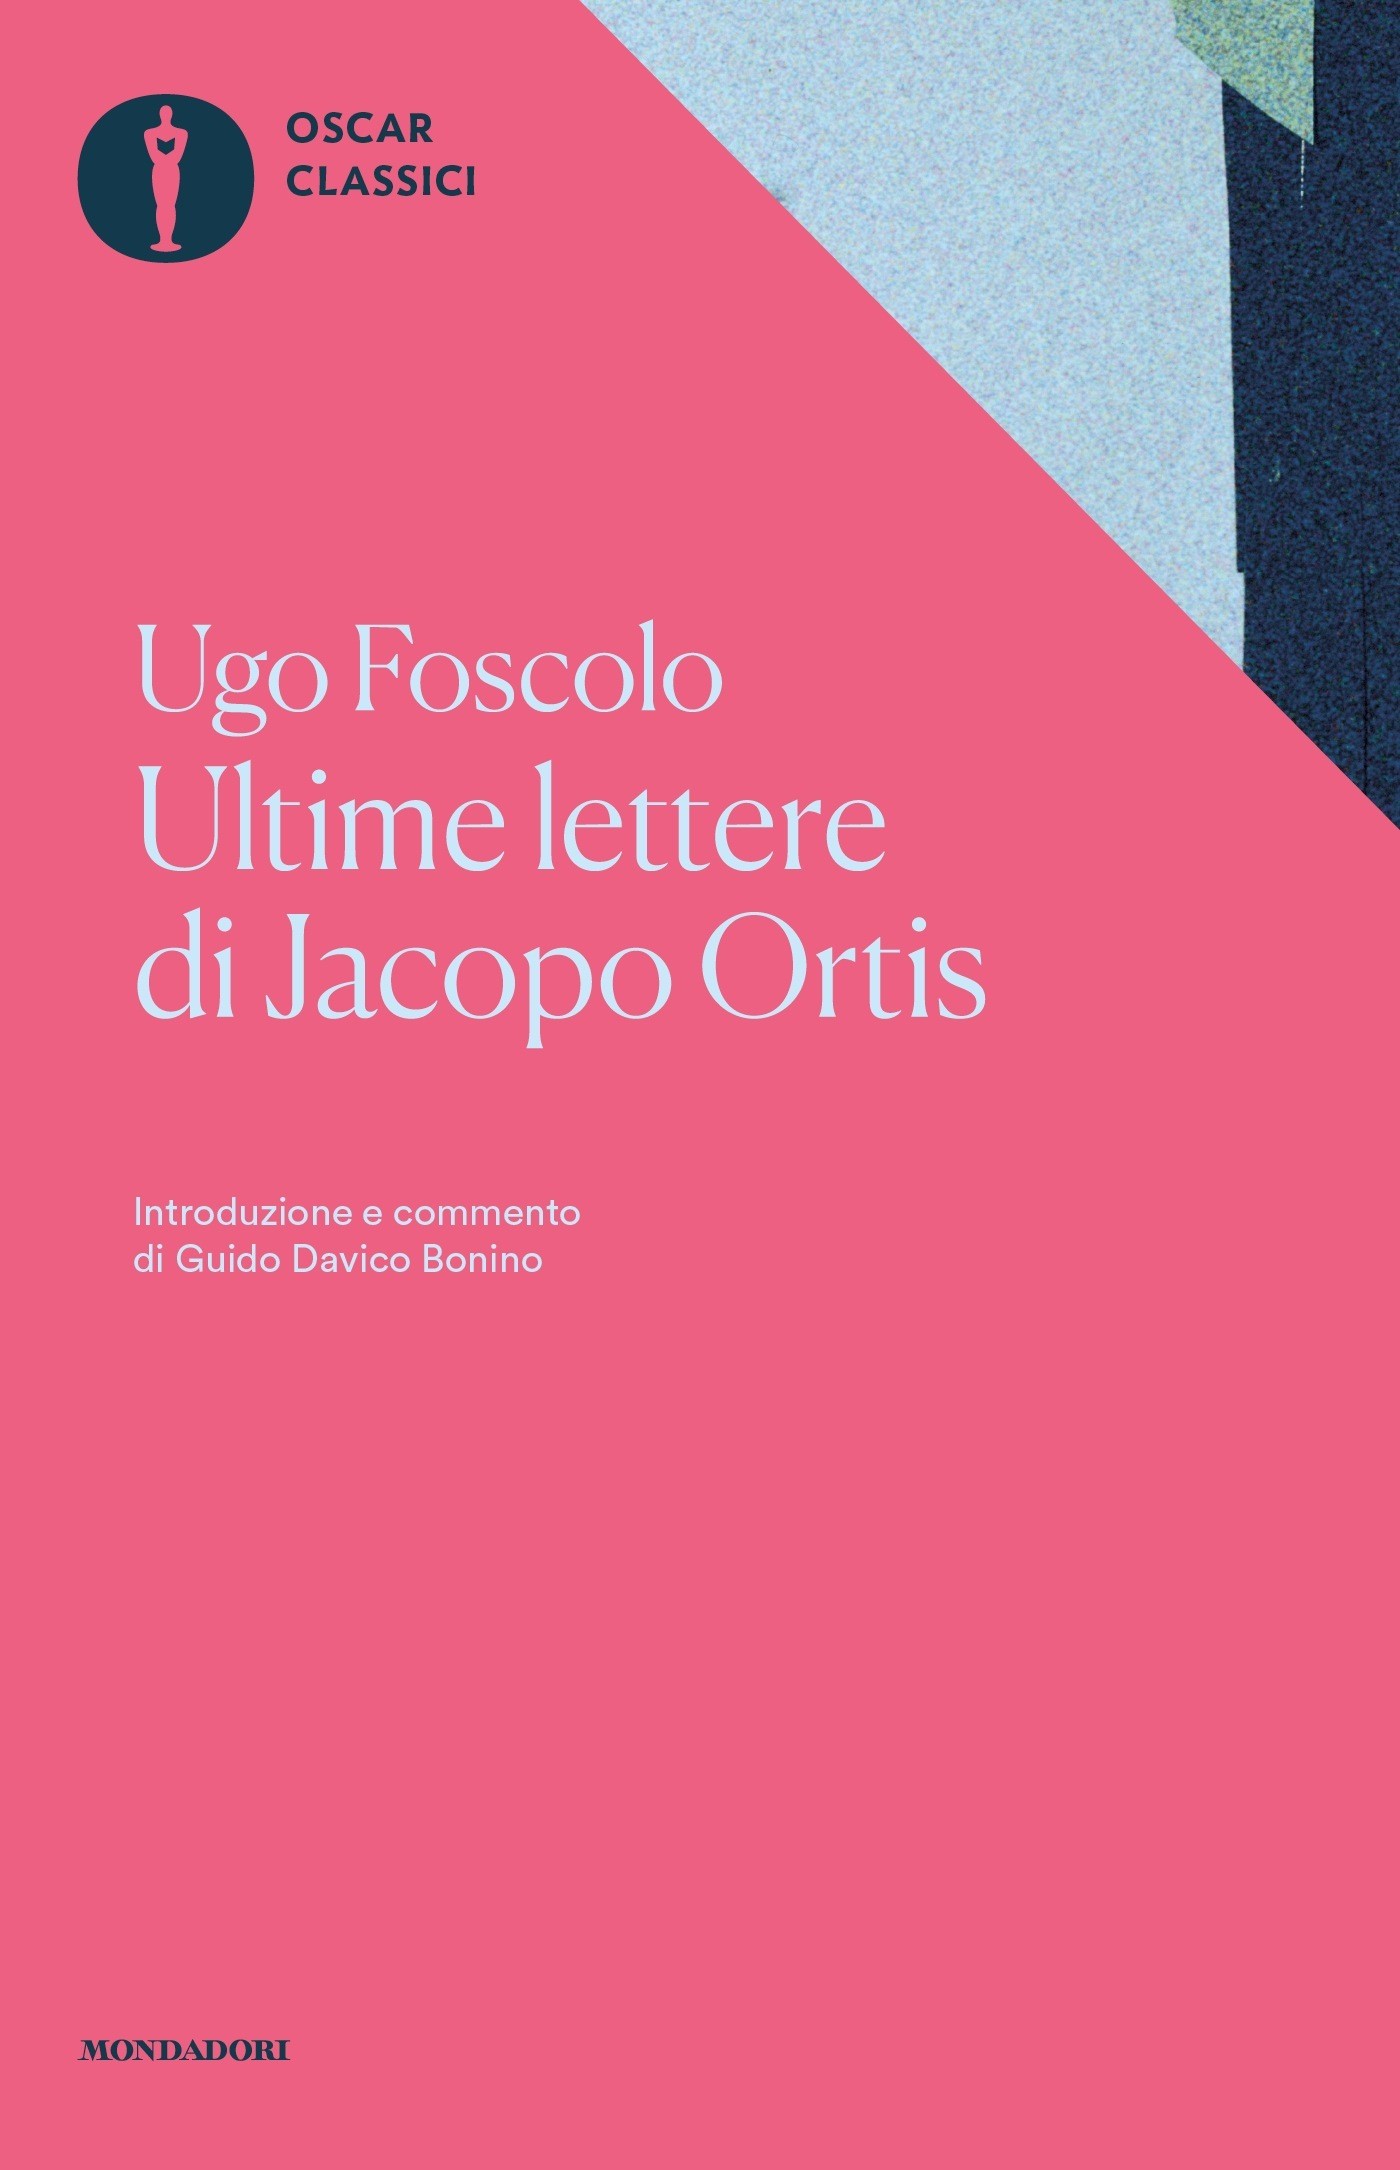 Book Reviews Le recensioni dei libri Ultime lettere di Jacopo Ortis Ugo Foscolo